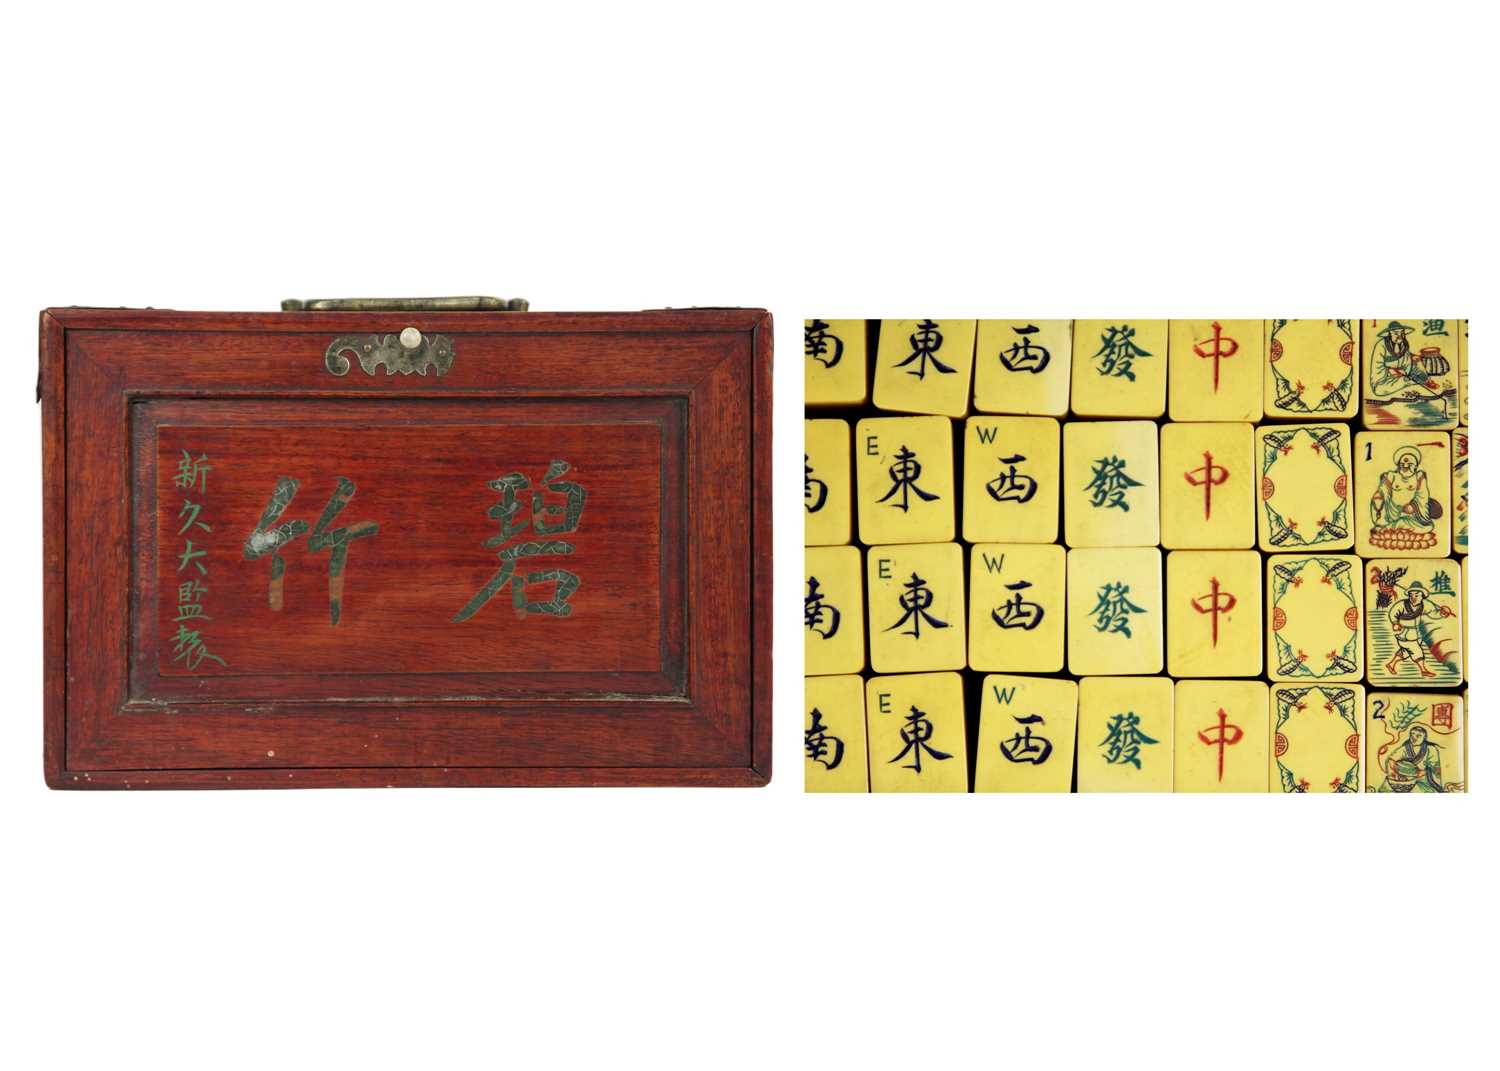 A mahogany cased mahjong set.